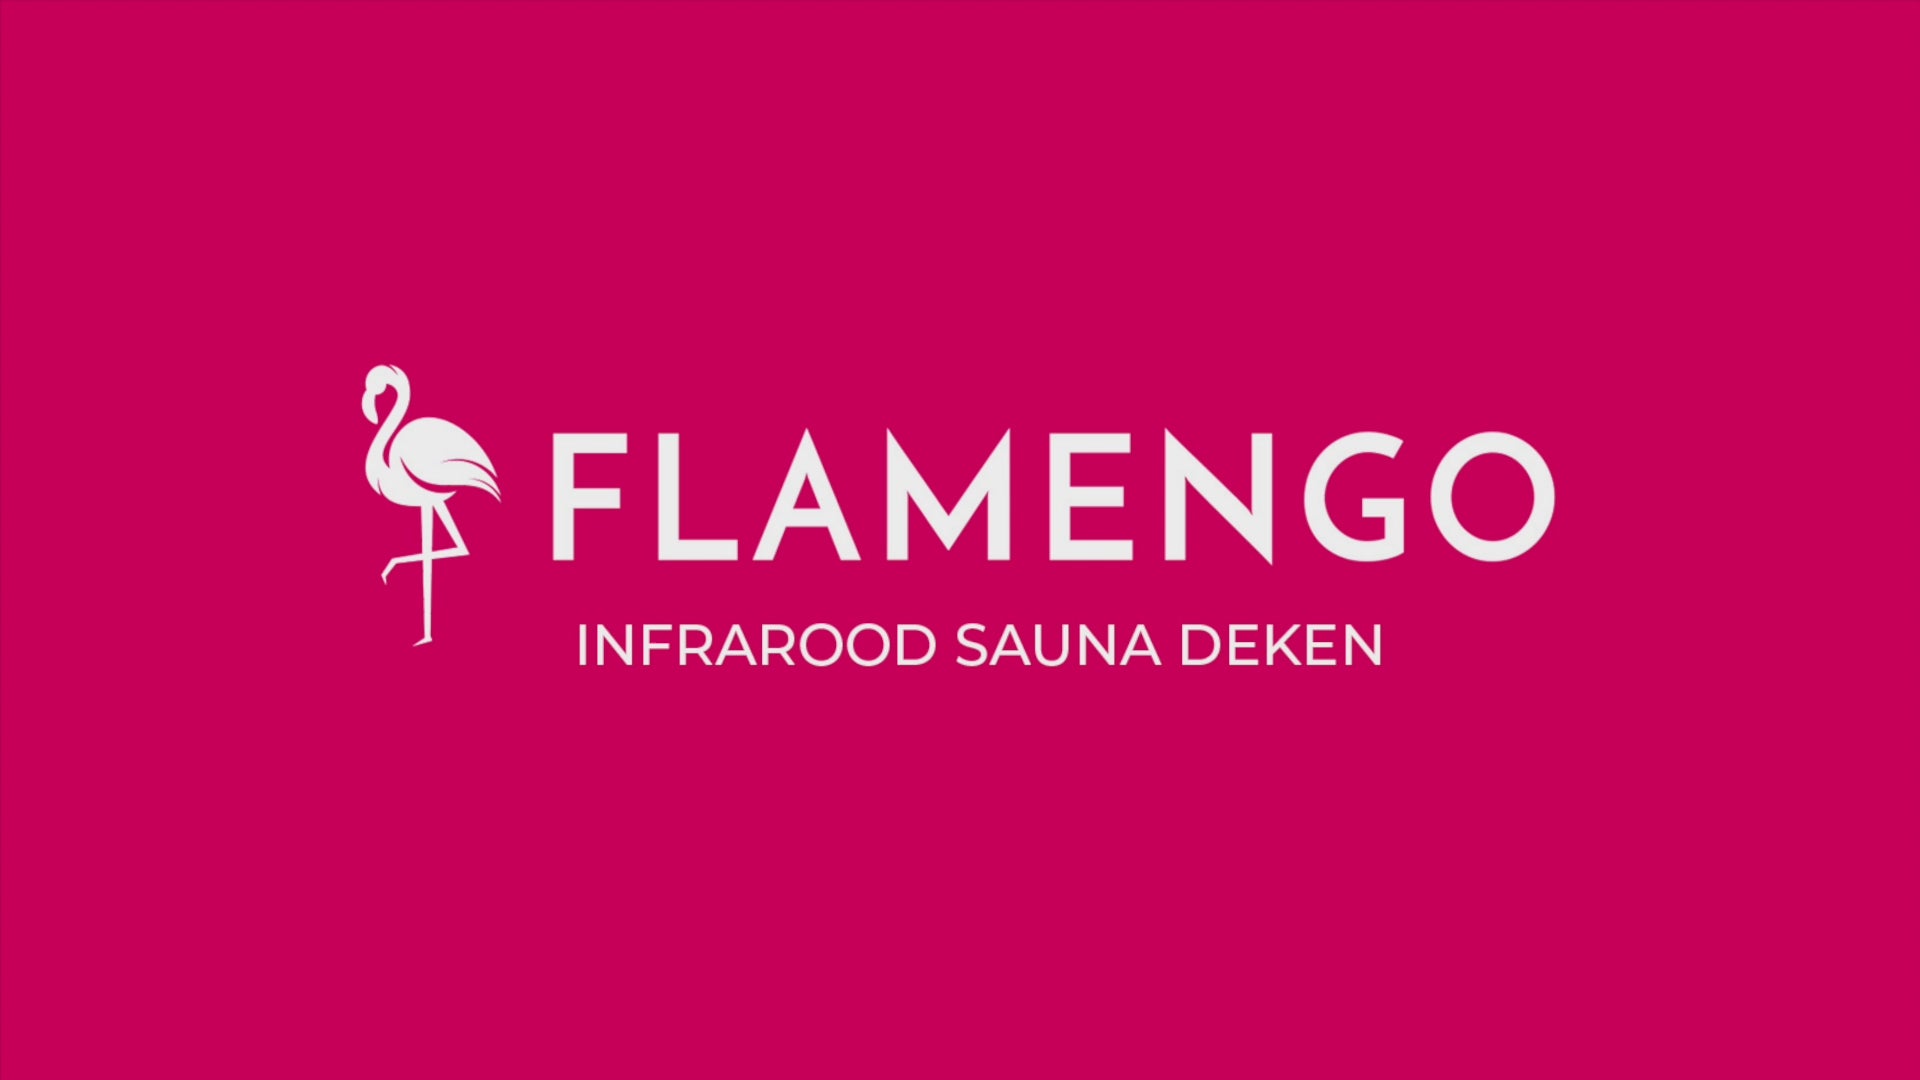 Video laden: flamengo infrarood deken video